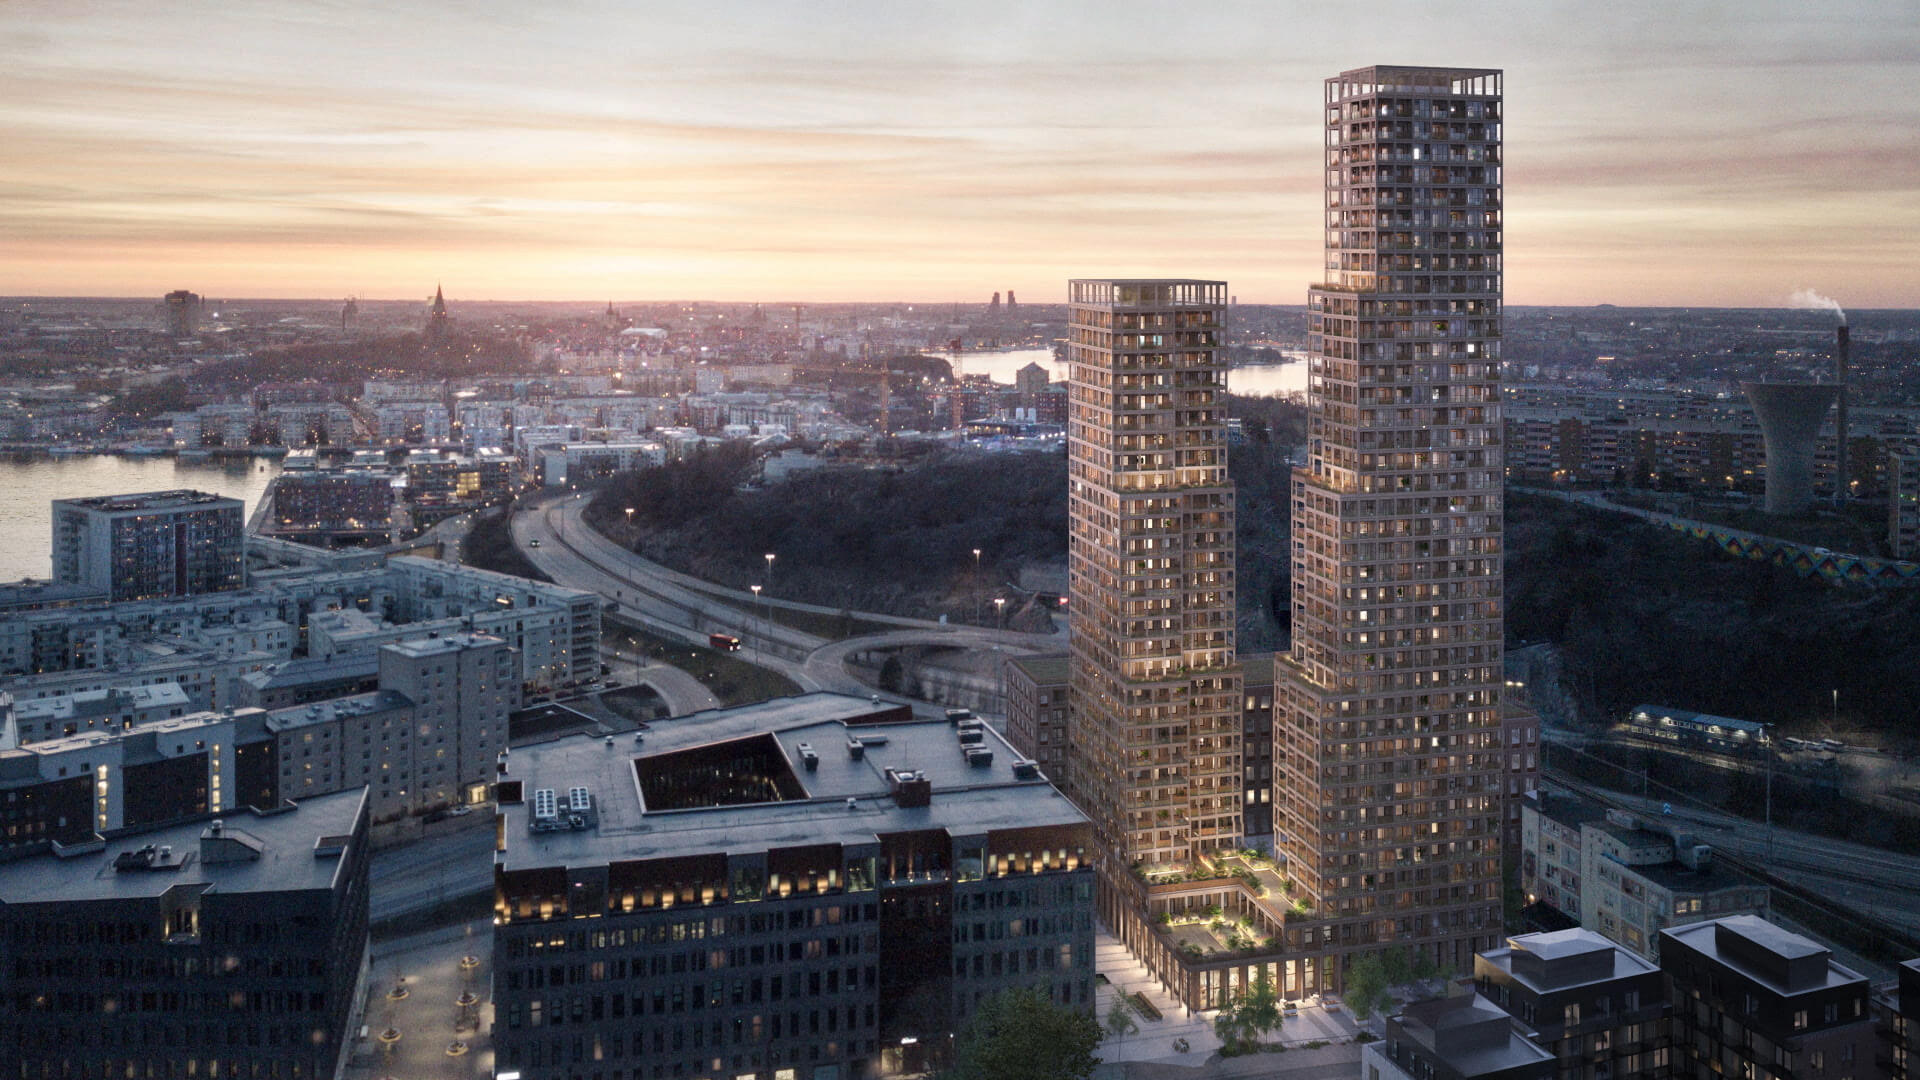 Nacka Port blir en nyproduktion utöver det vanliga. 126 meter bostadshus som blir ett givet riktmärke i den framtida siluetten i Stockholms län.